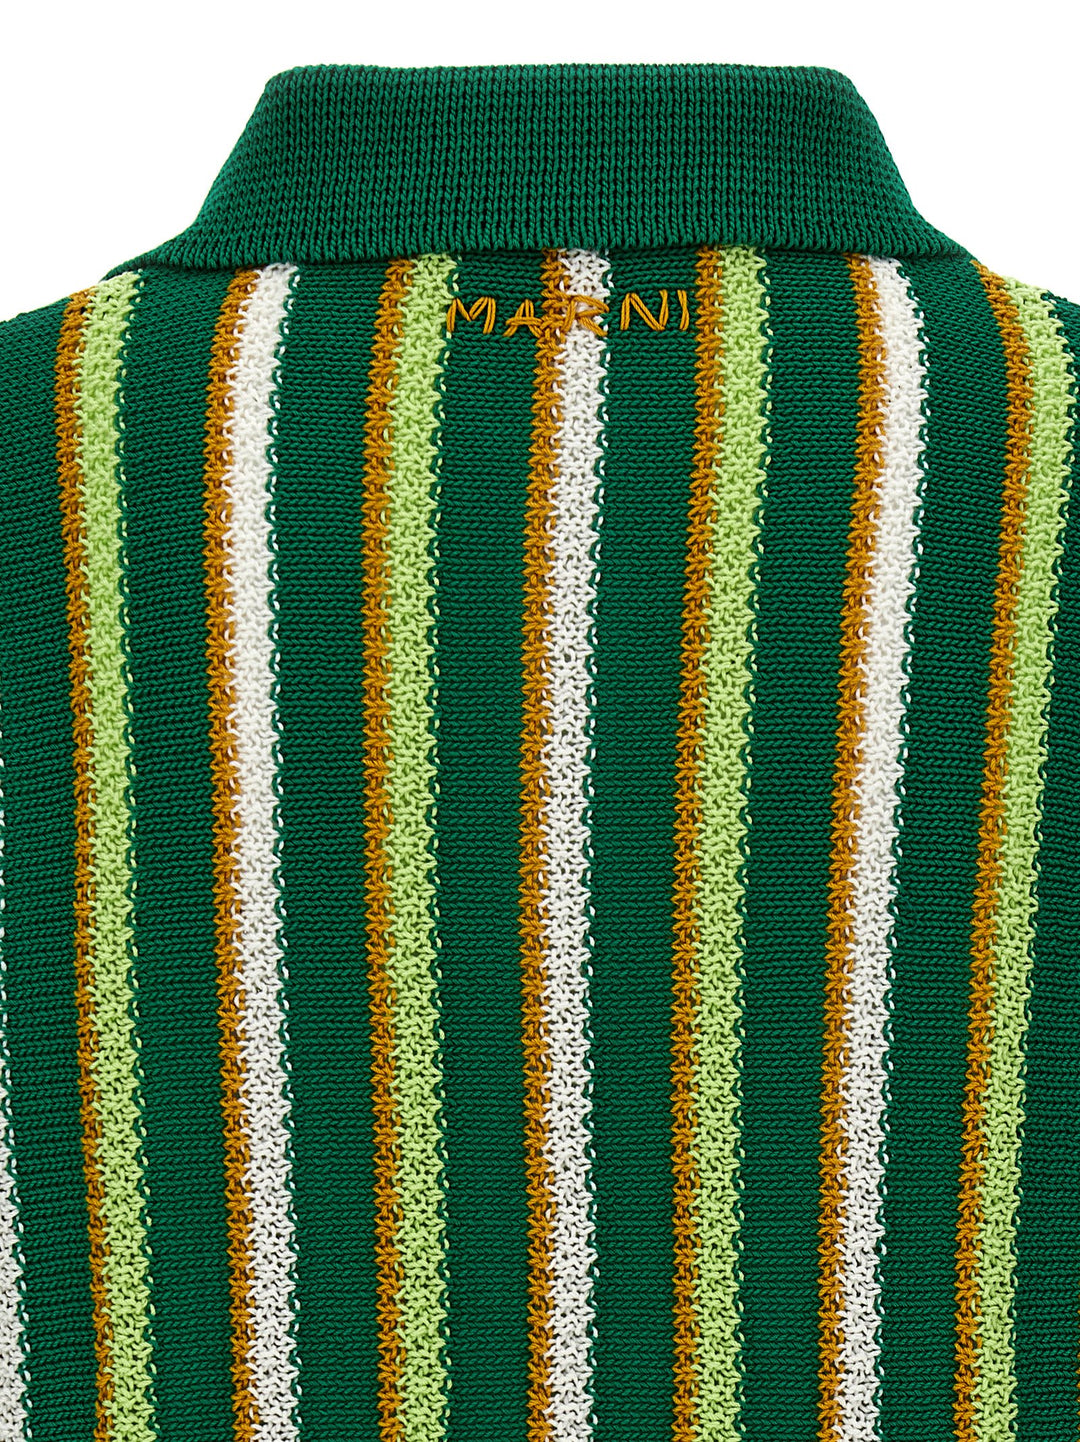 Striped  Shirt Polo Verde